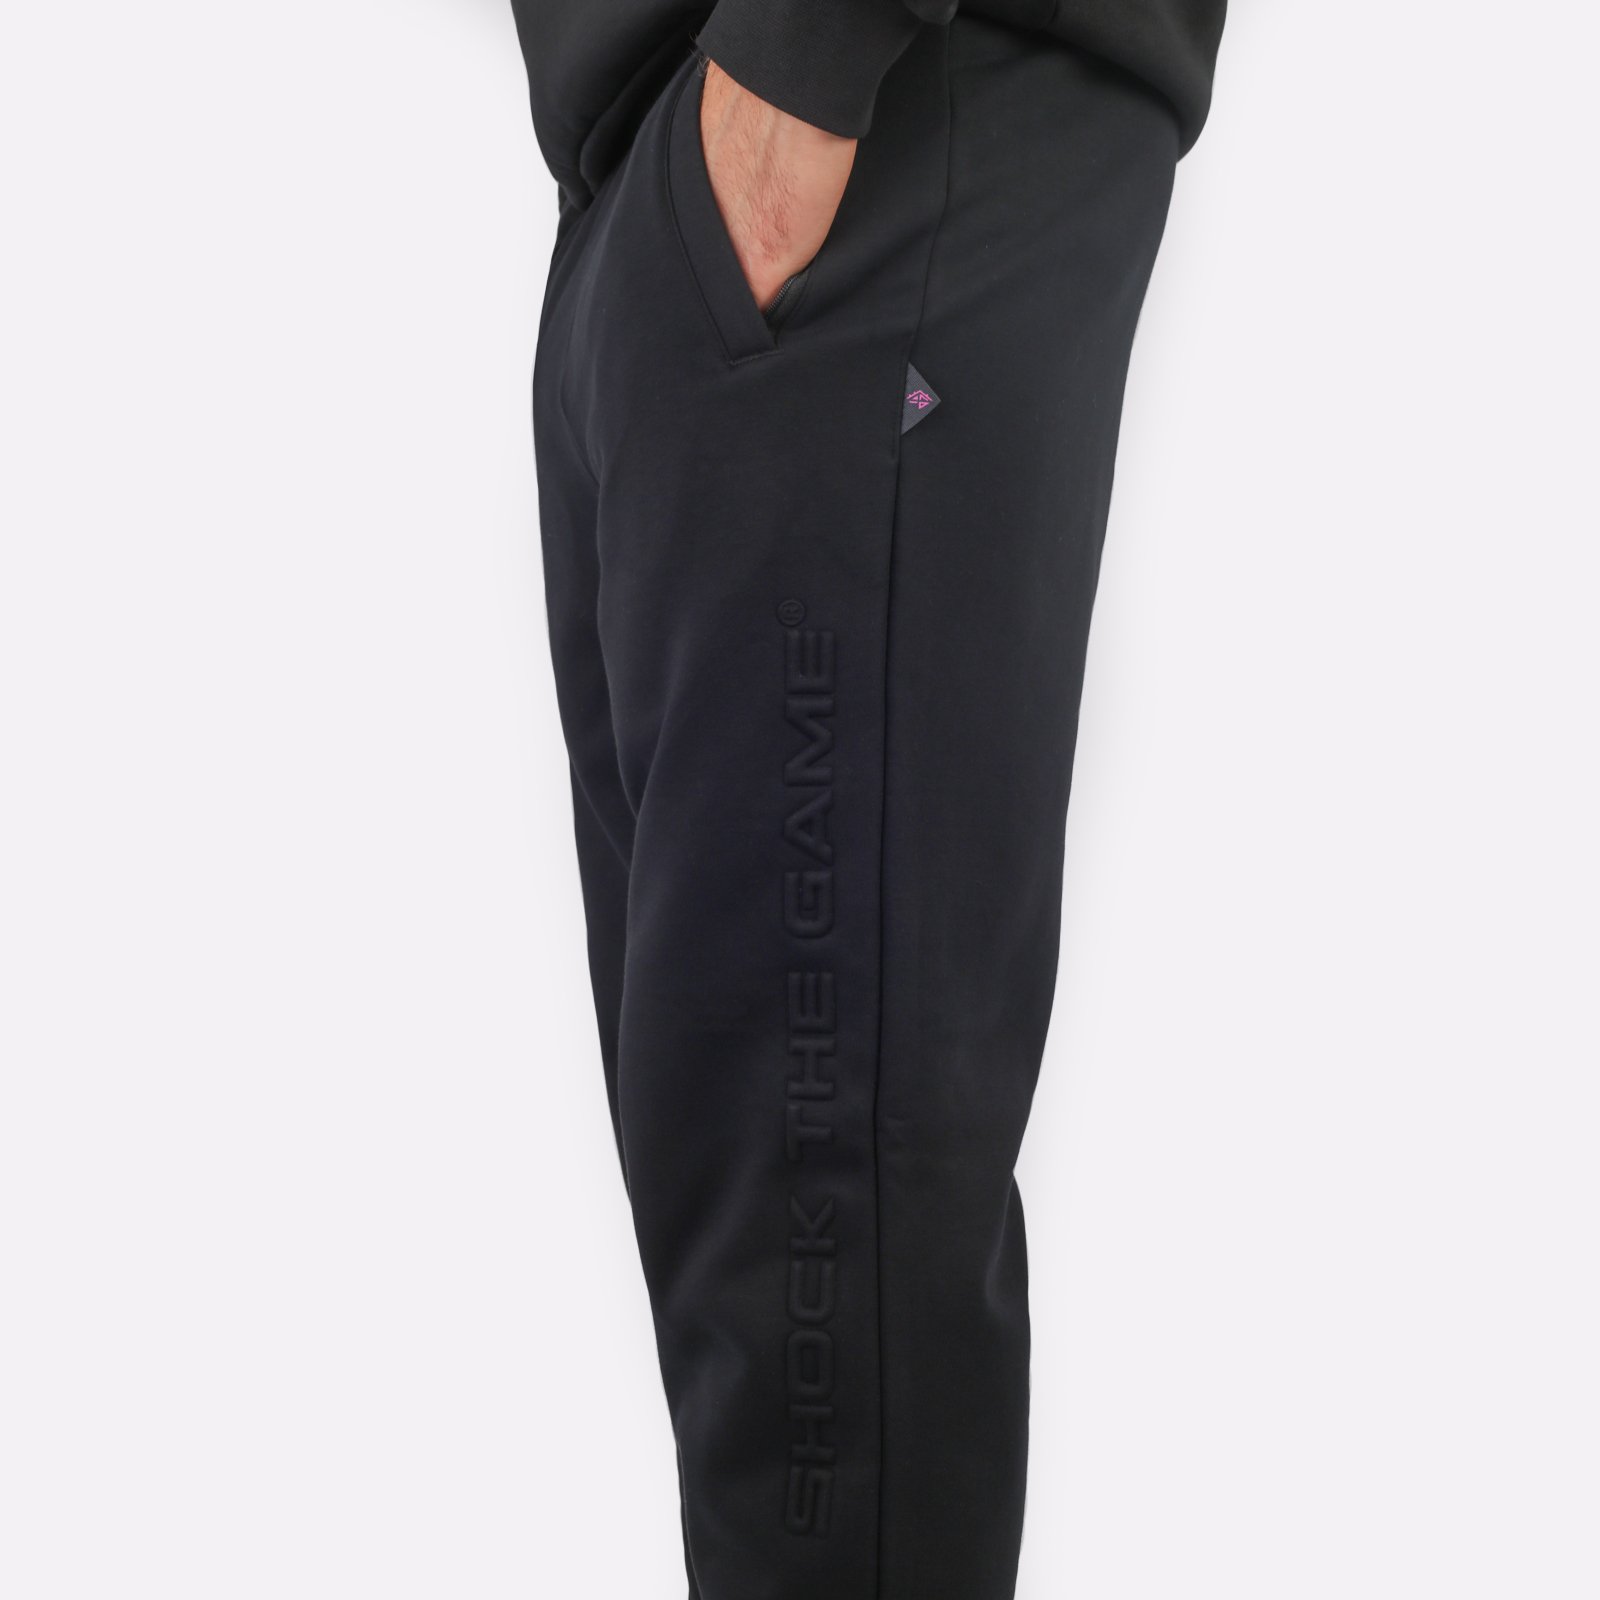 мужские брюки ANTA Knit Track Pants  (852341317N-3)  - цена, описание, фото 4